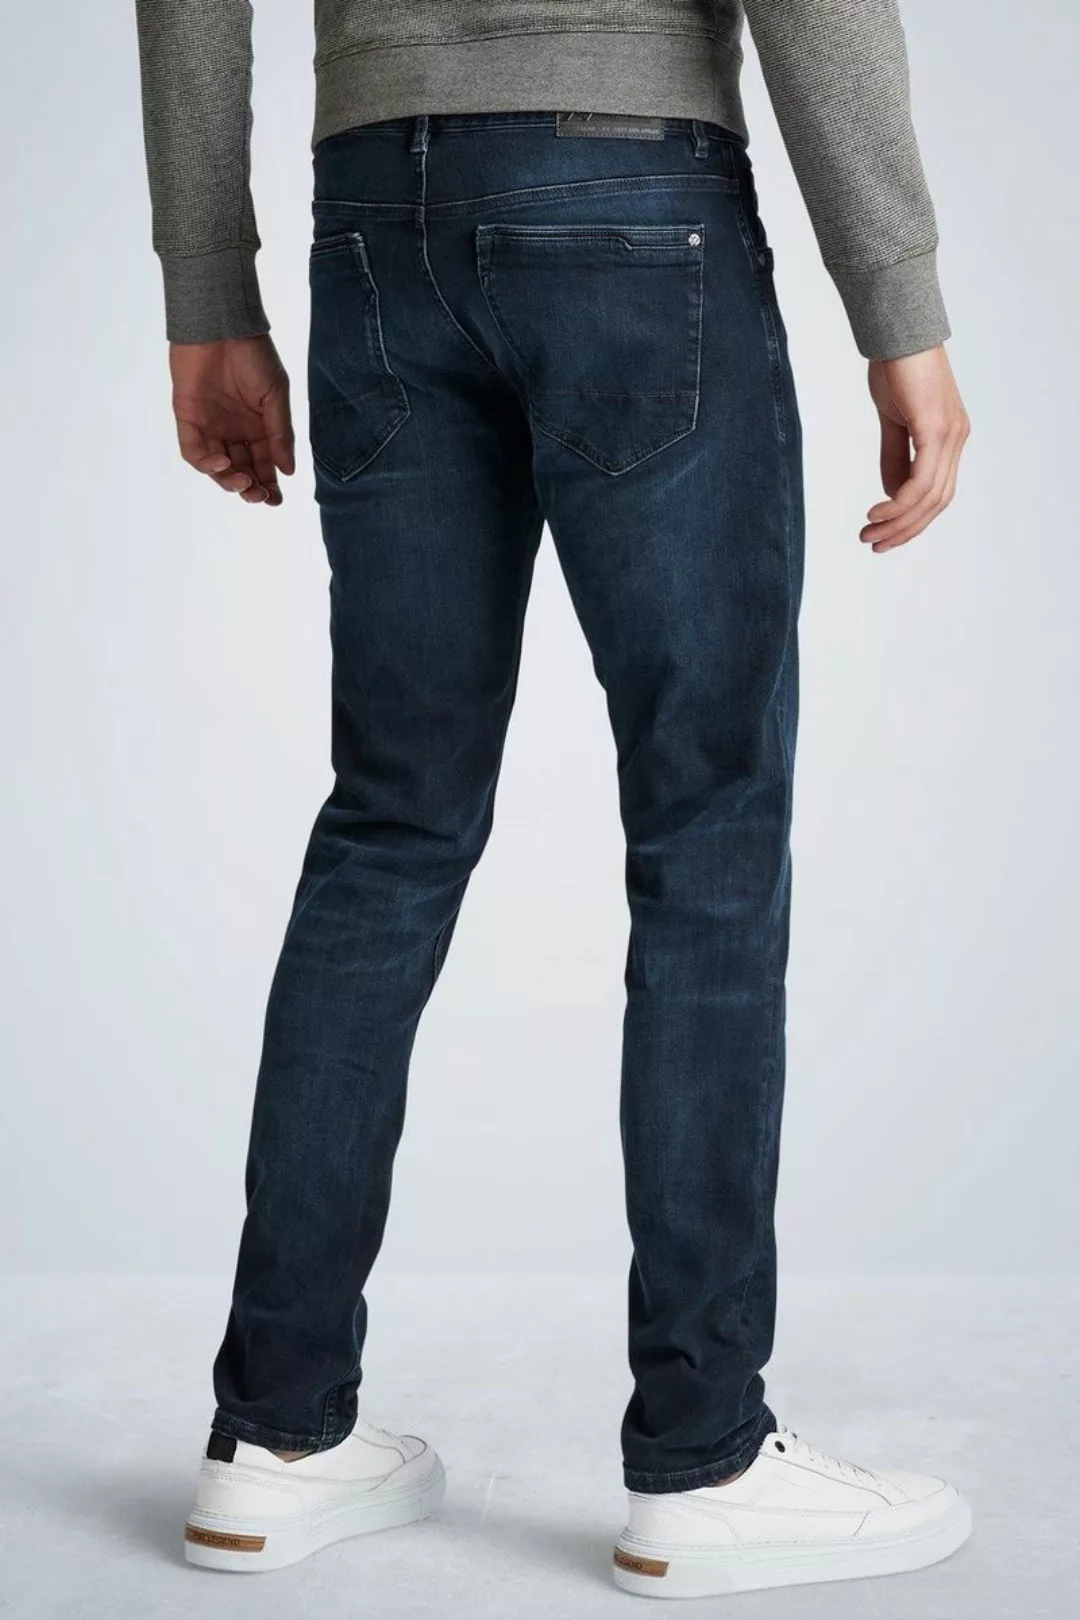 PME Legend XV Jeans Blue Black PTR150 - Größe W 34 - L 30 günstig online kaufen